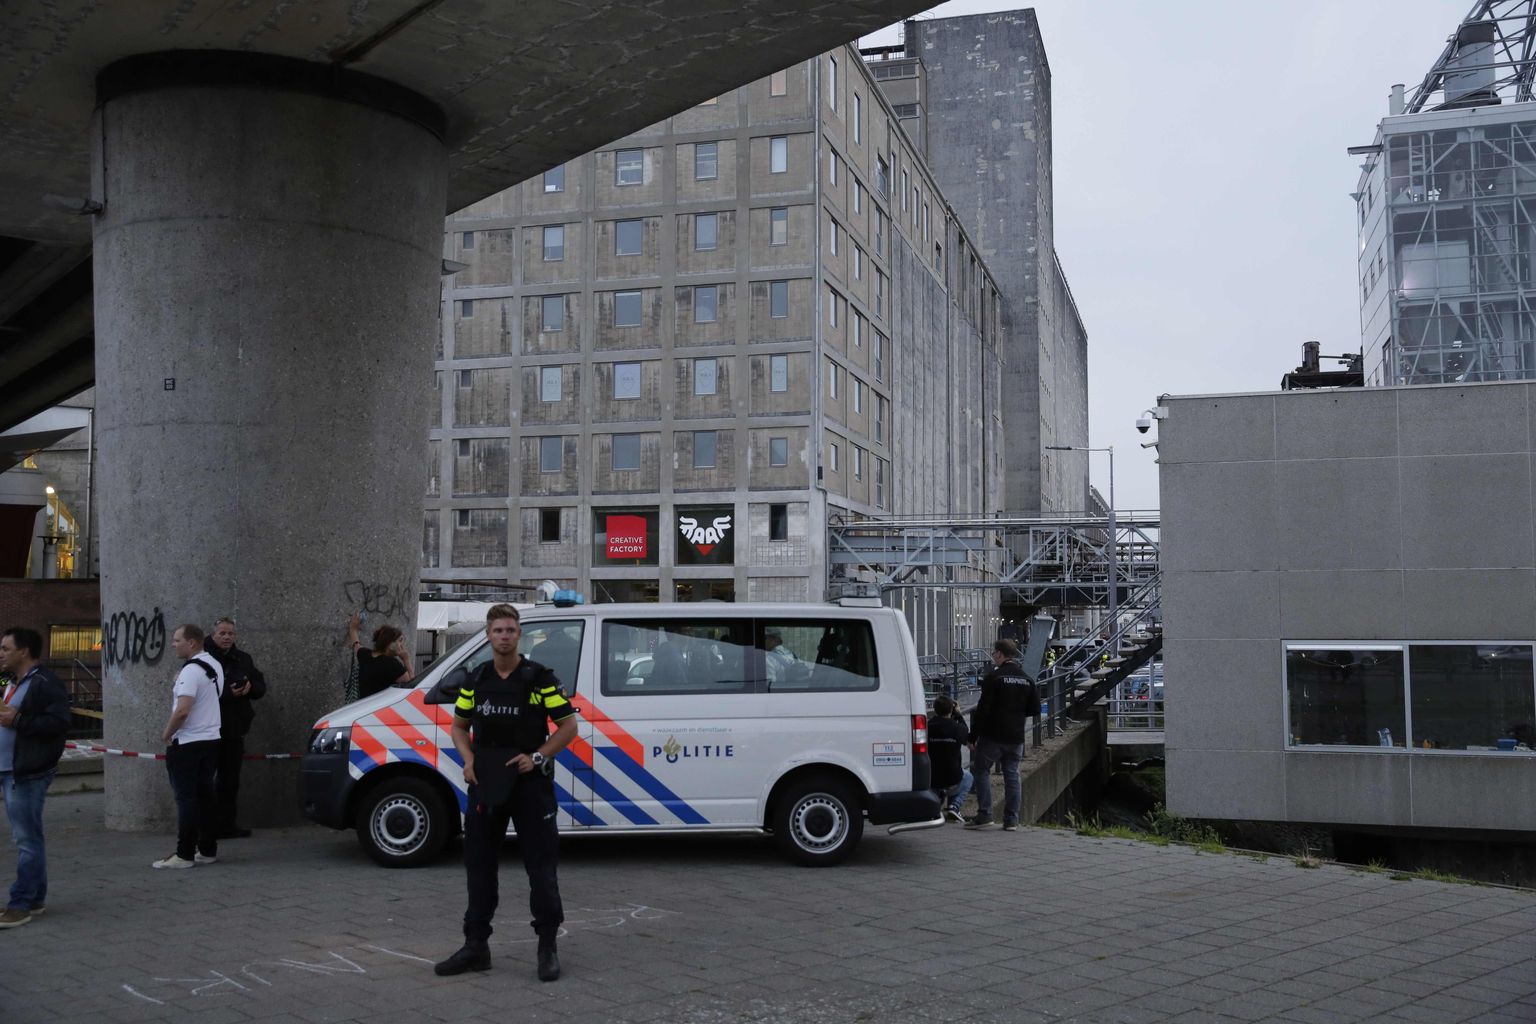 Rotterdami politsei.